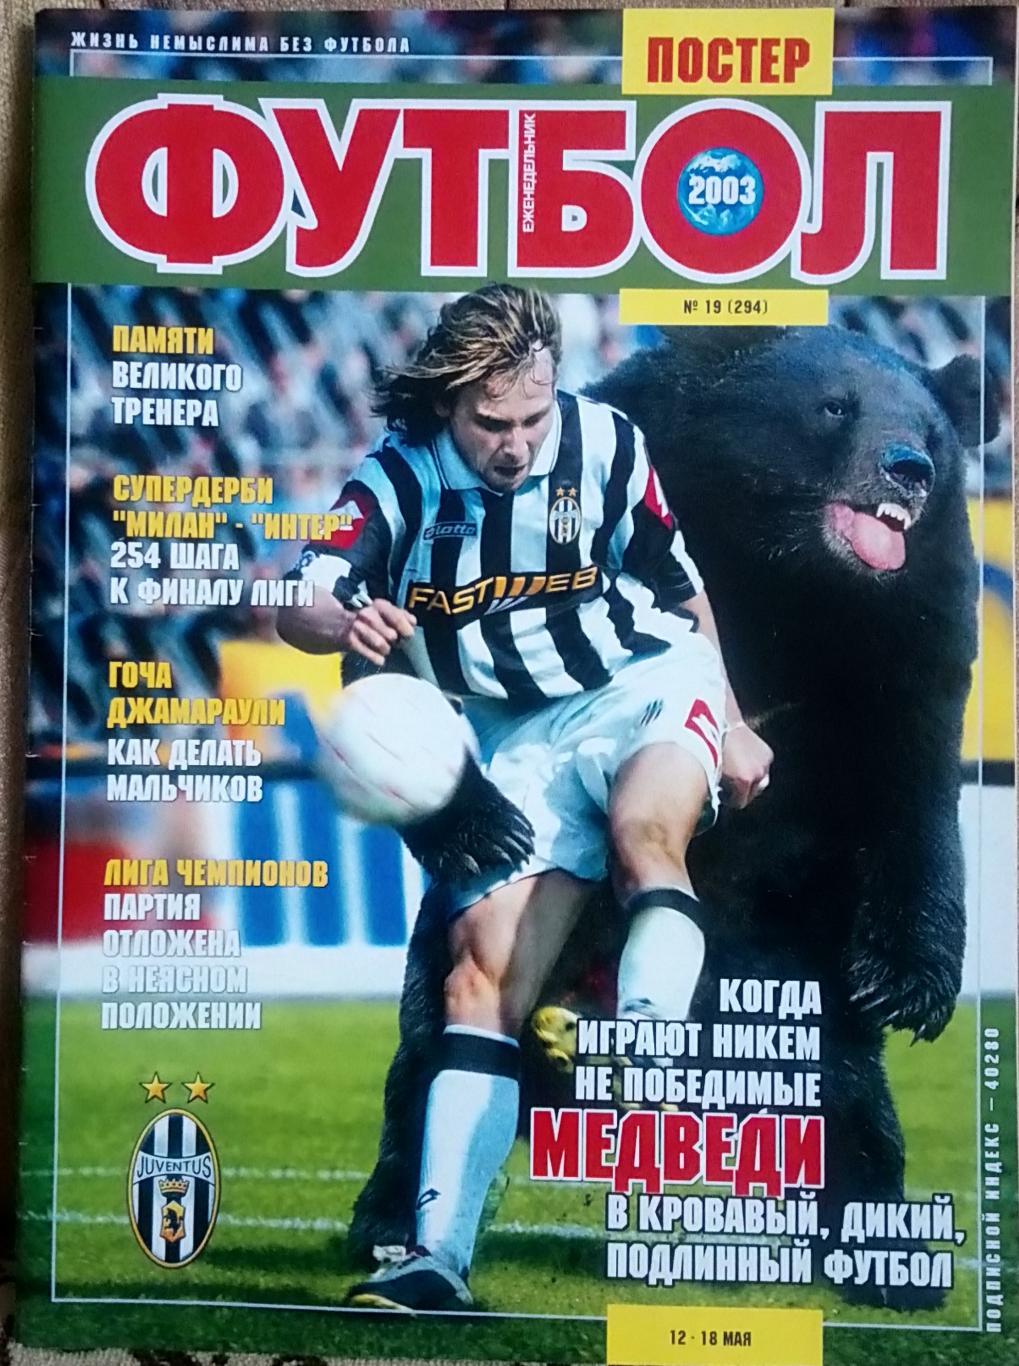 Журнал. Футбол. N 19/2003. Постер Недвед.